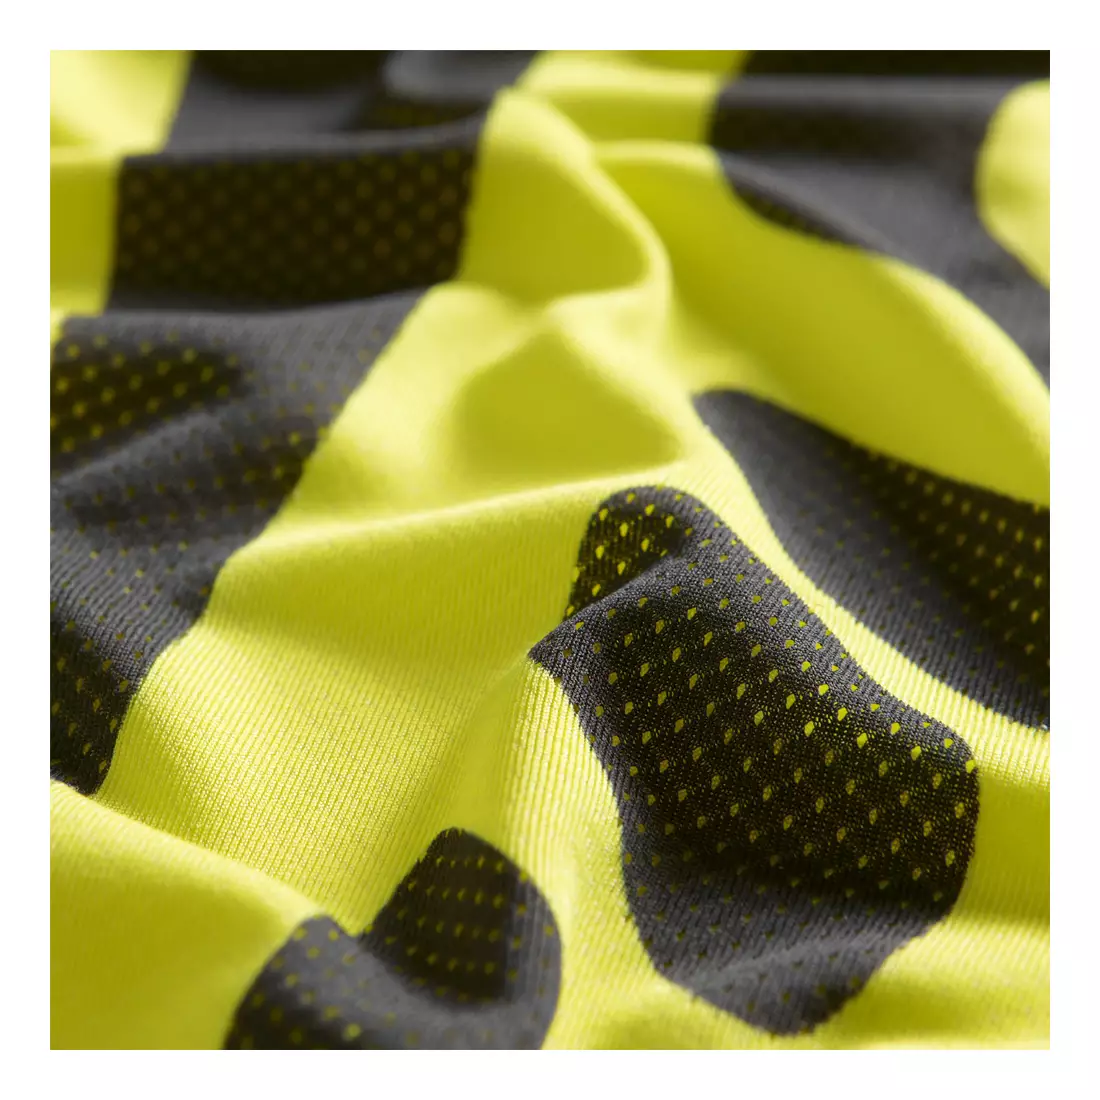 ASICS 110477-0343 SPEED SS TOP - pánske bežecké tričko, farba: žltá